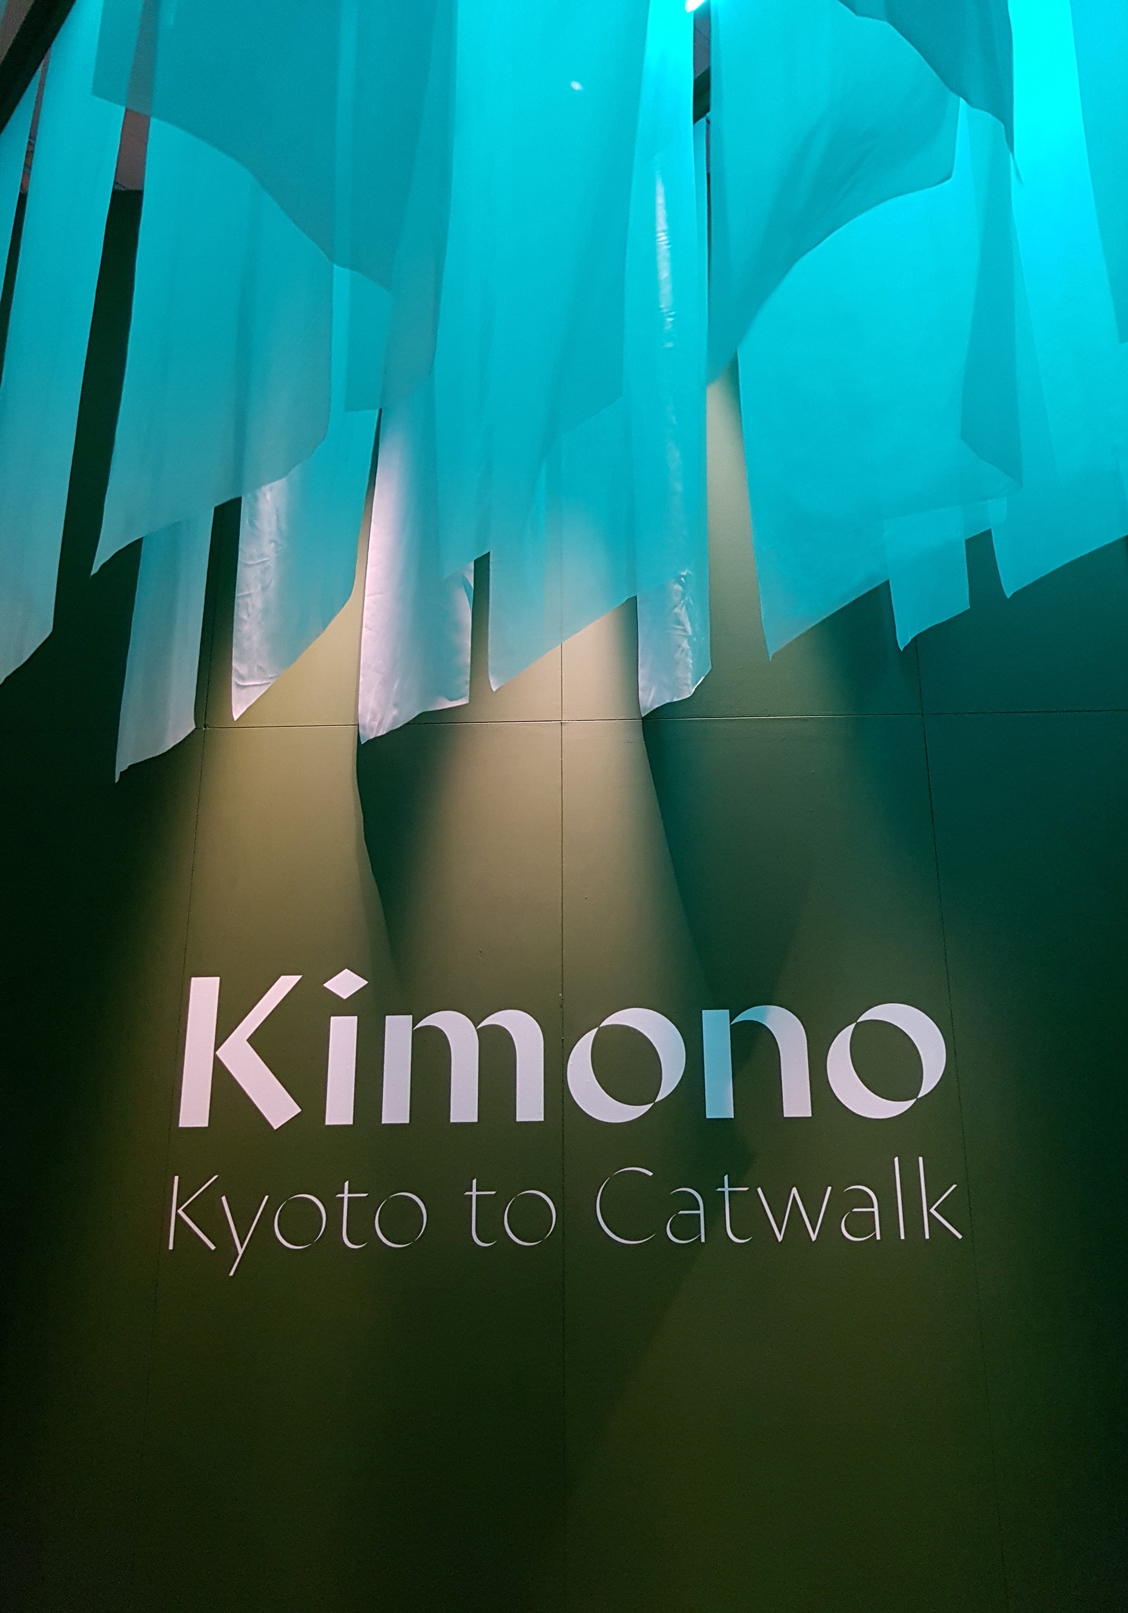 kyoto to catwalk